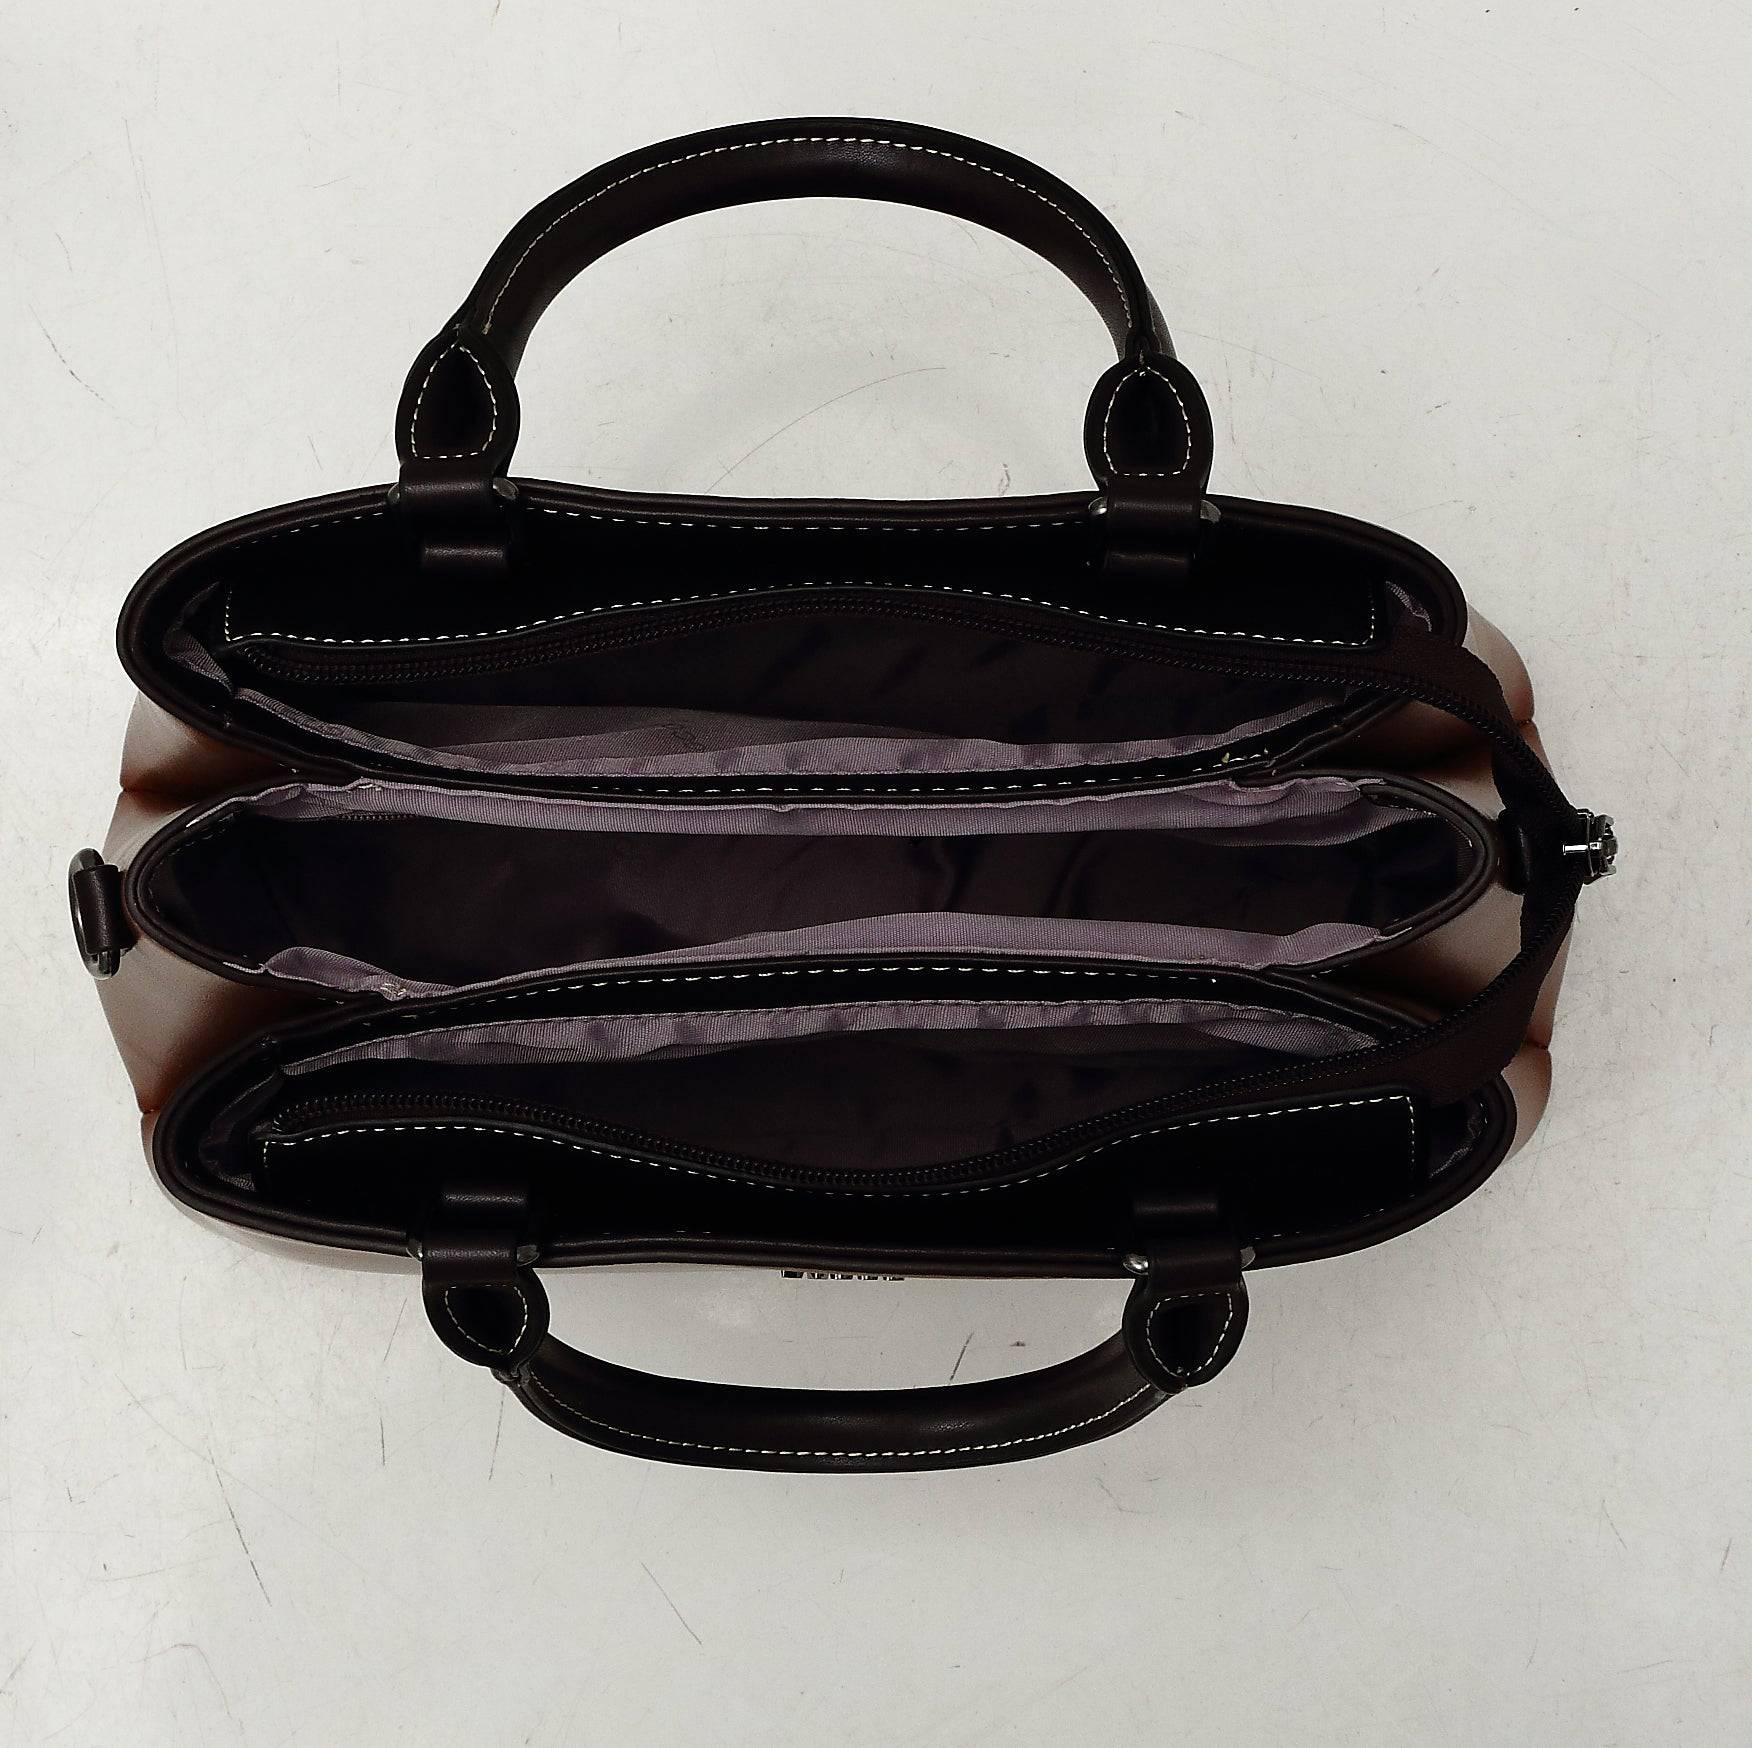 حقيبة يد نسائية باللون البيج بملمس ناعم ويد مريحة وحزام طويل للكتف - KSA